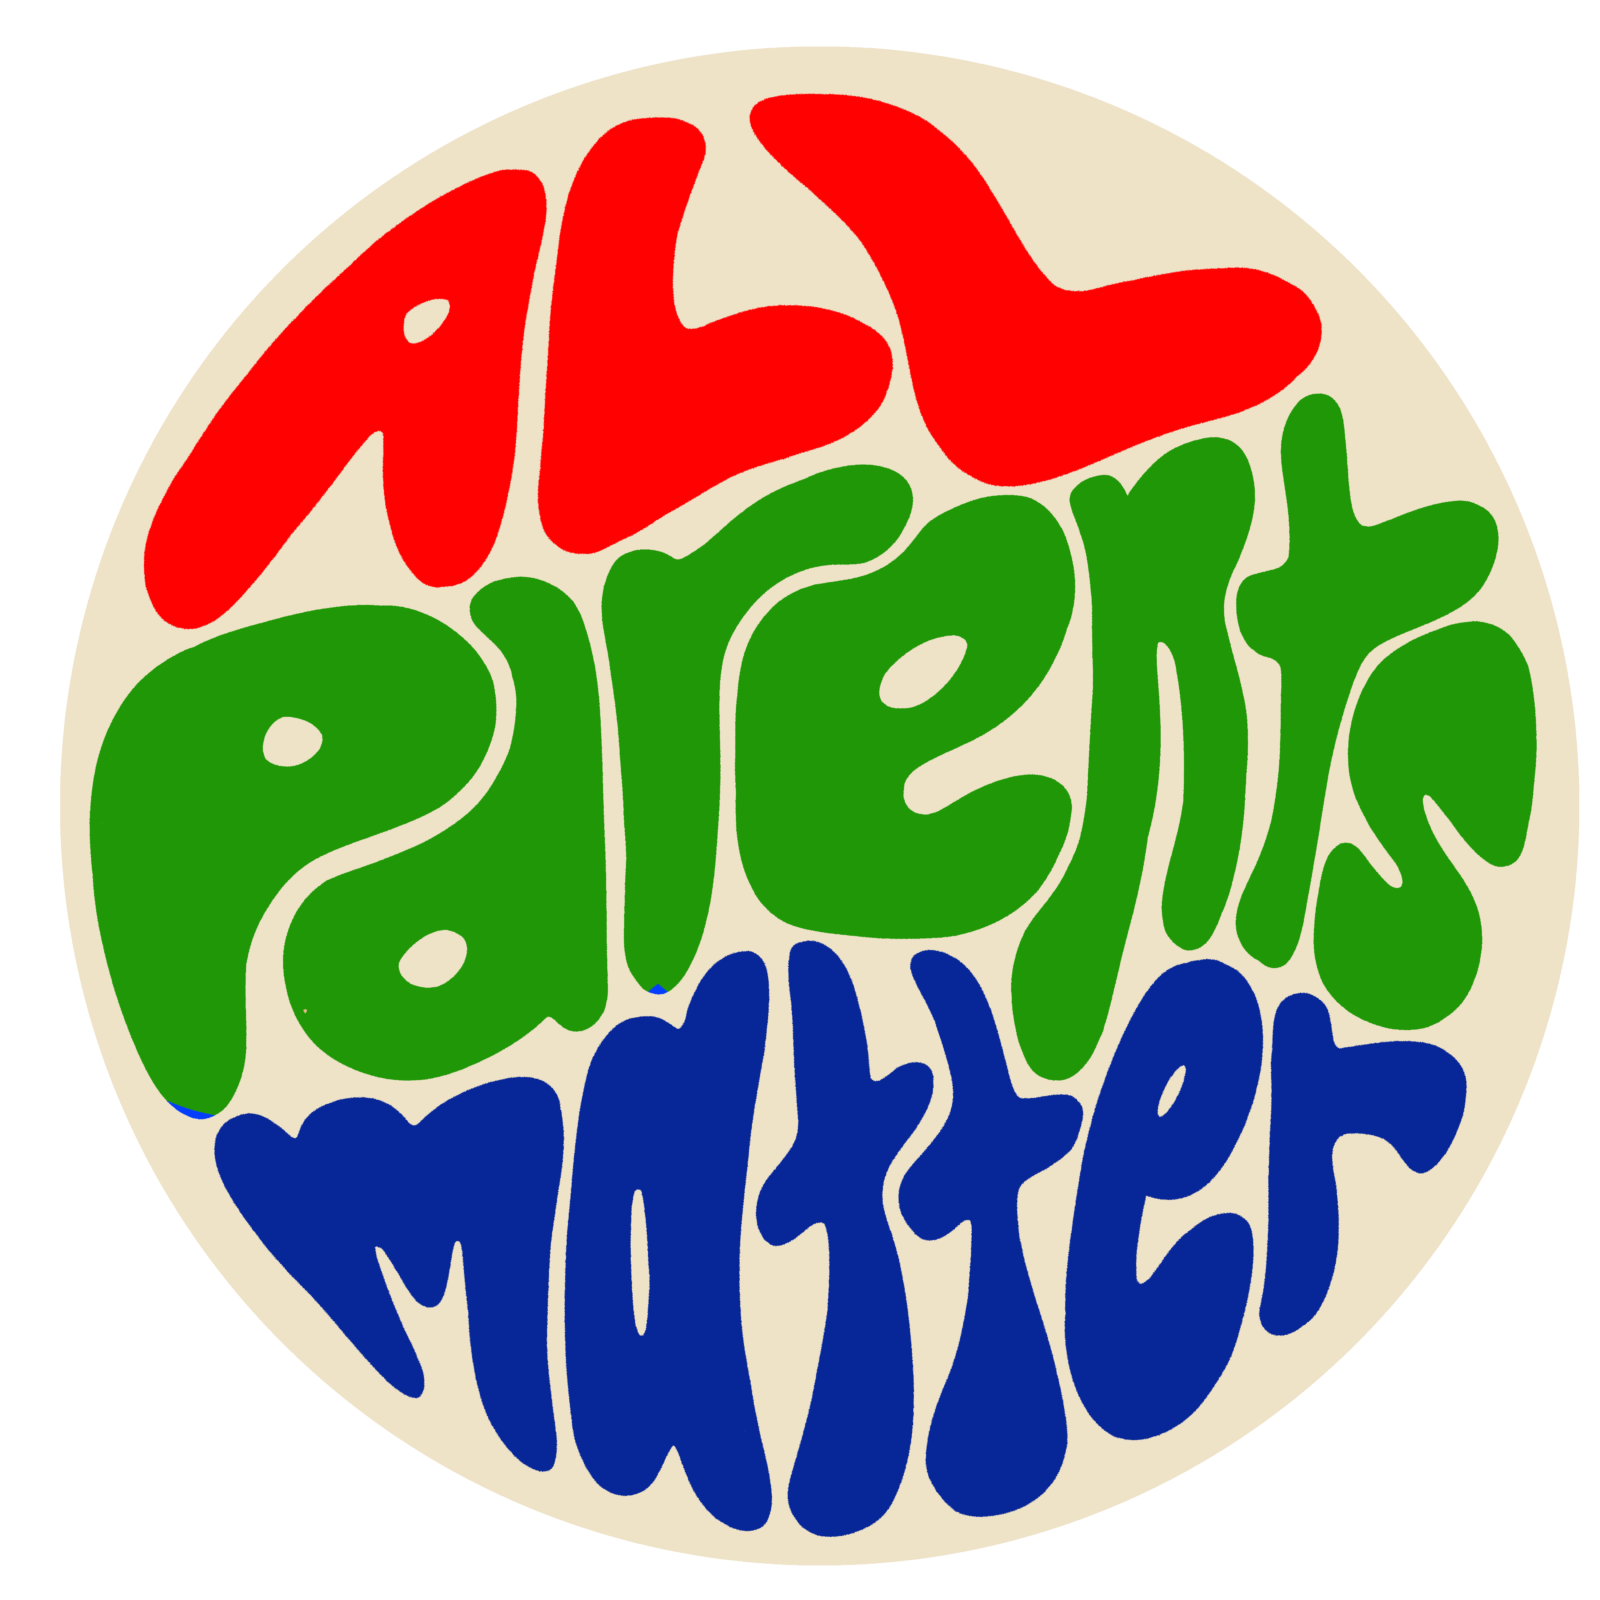 All Parents Matter